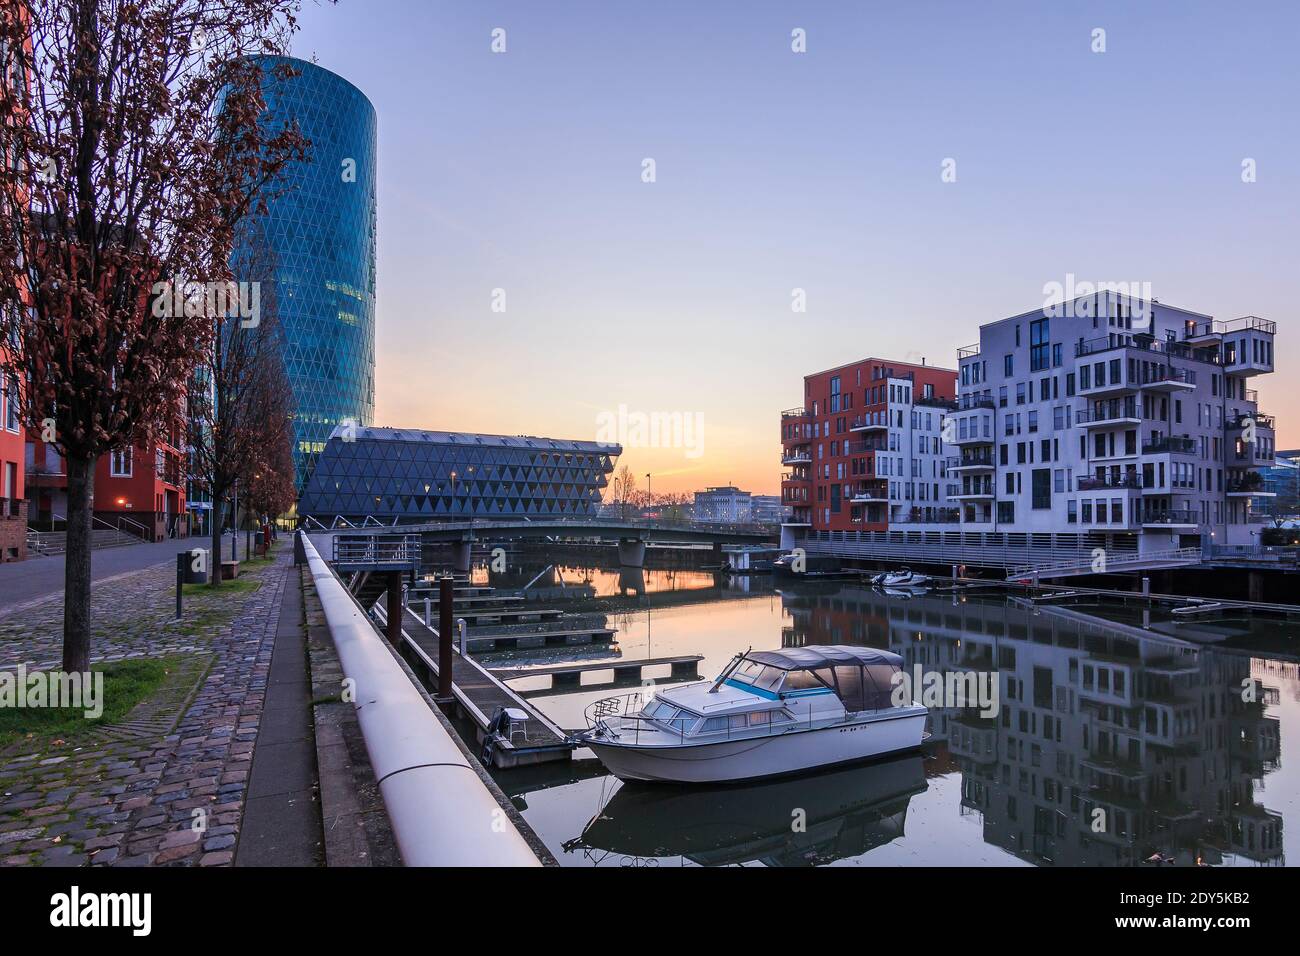 Stadtbild in Frankfurt am Main mit Kanal und Gebäuden. Boote im Hafen vor Sonnenaufgang im West Harbour Wohngebiet. Straße mit Bäumen und r Stockfoto